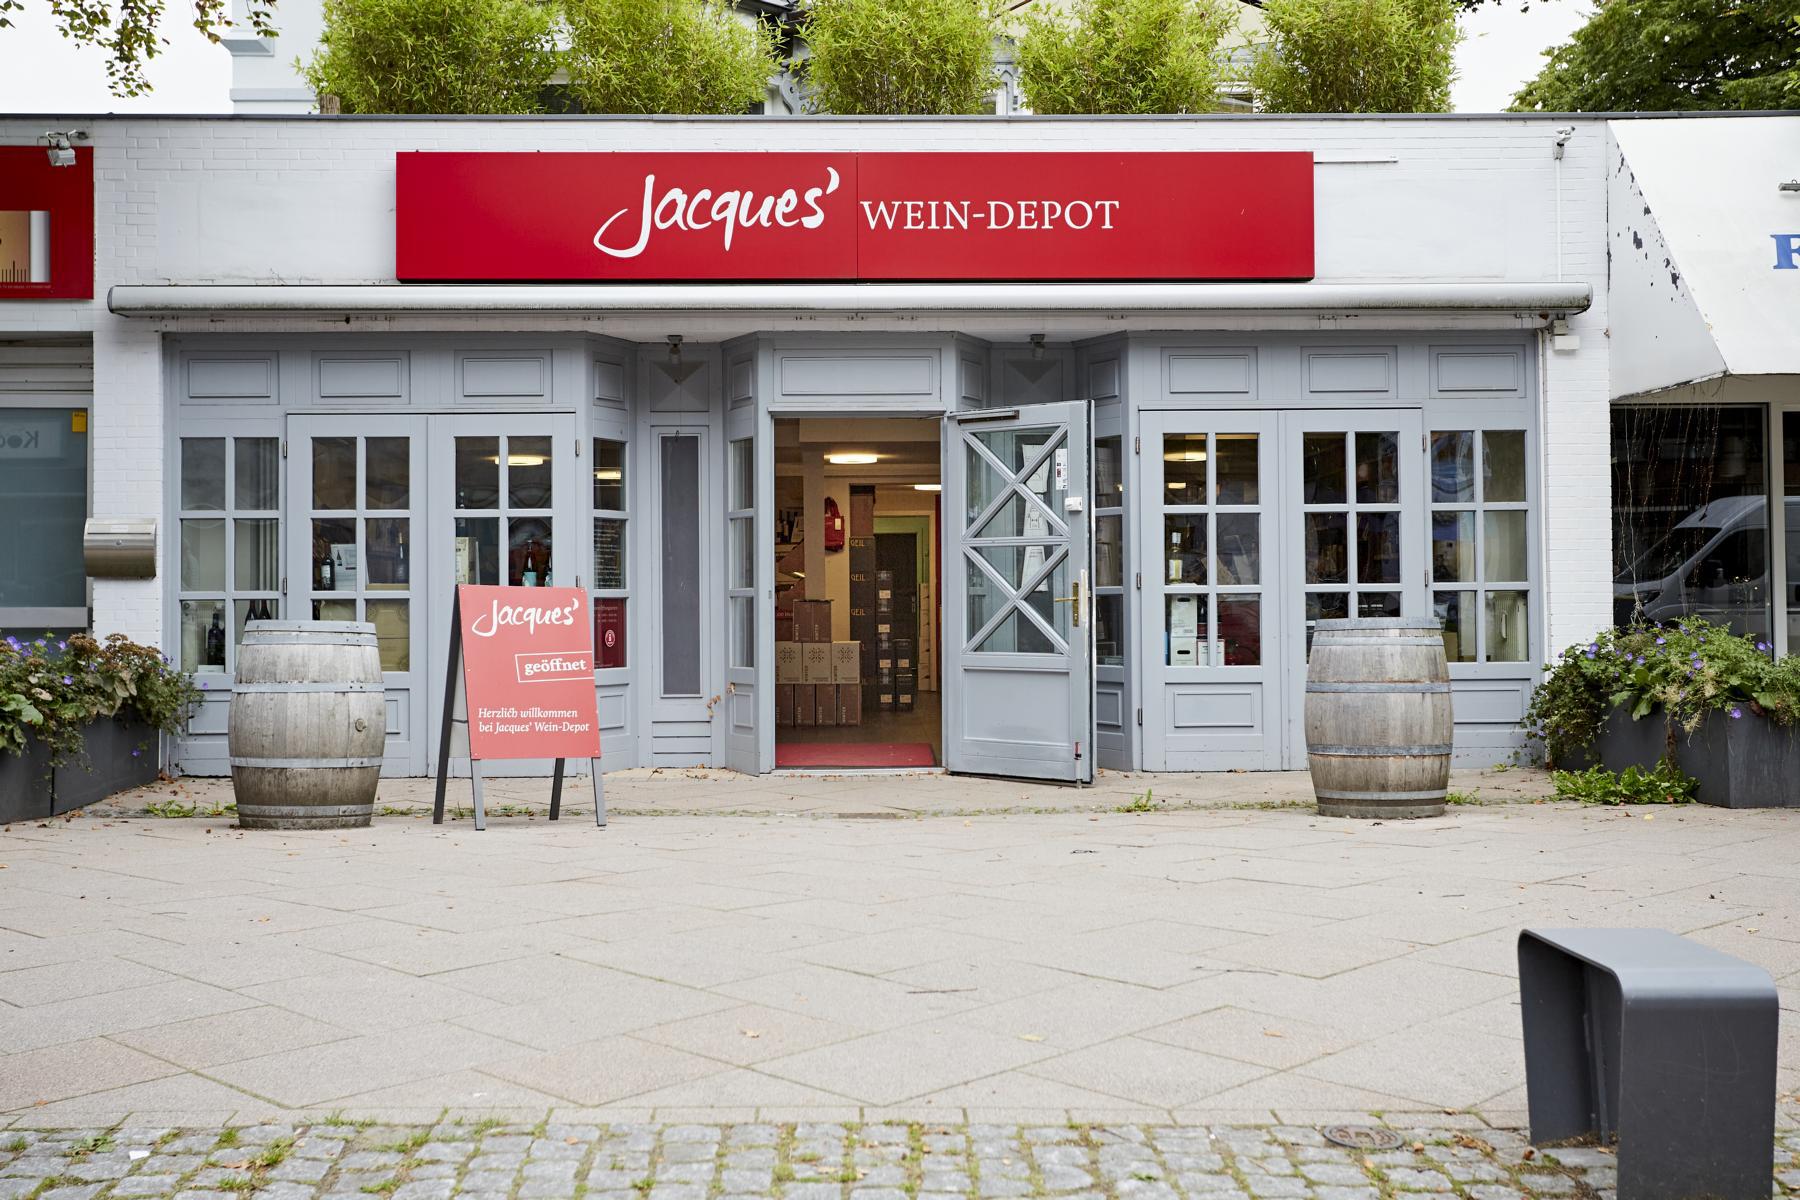 Bilder Jacques’ Wein-Depot Hamburg-Groß-Flottbek